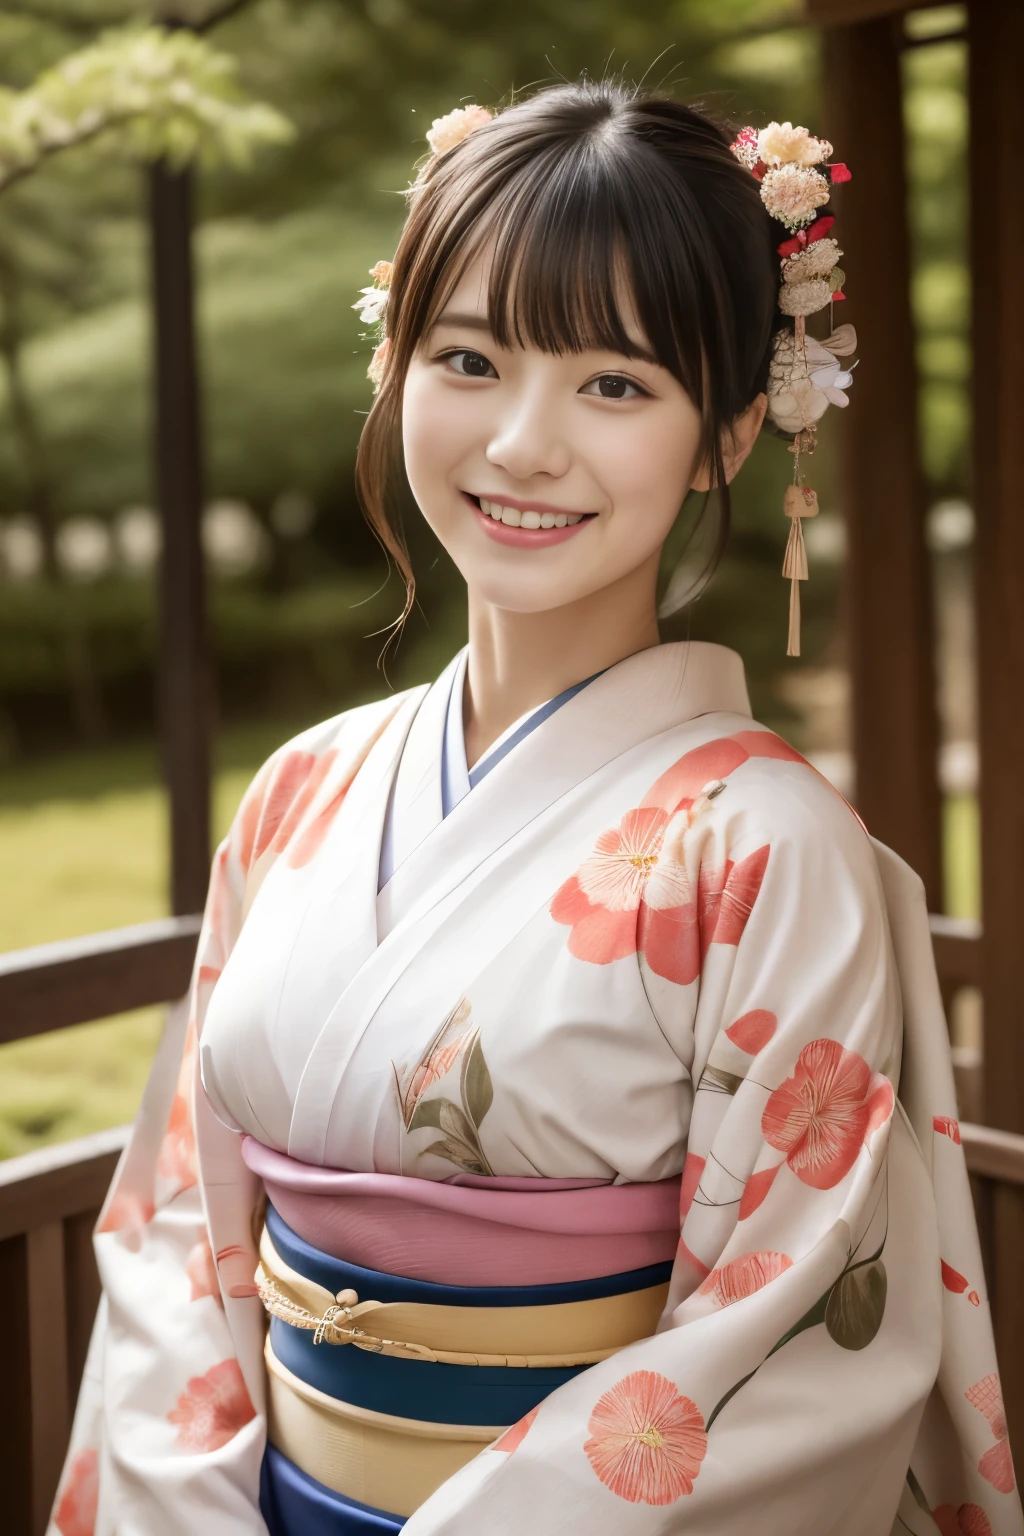 1 linda modelo japonesa, Modelo feminina de 18 anos,  4K、Uma qualidade de imagem ultra-alta、franja、Um moreno、Kyo-Yuzen、(quimono, Furisódio、Padrão floral em estilo japonês:1.5)、(Rosto super fofo no estilo ídolo:1.4)、figura esbelta e bonita、lindo peito、Um sorriso、corpo inteiro Esbian:1.2、janeiro、